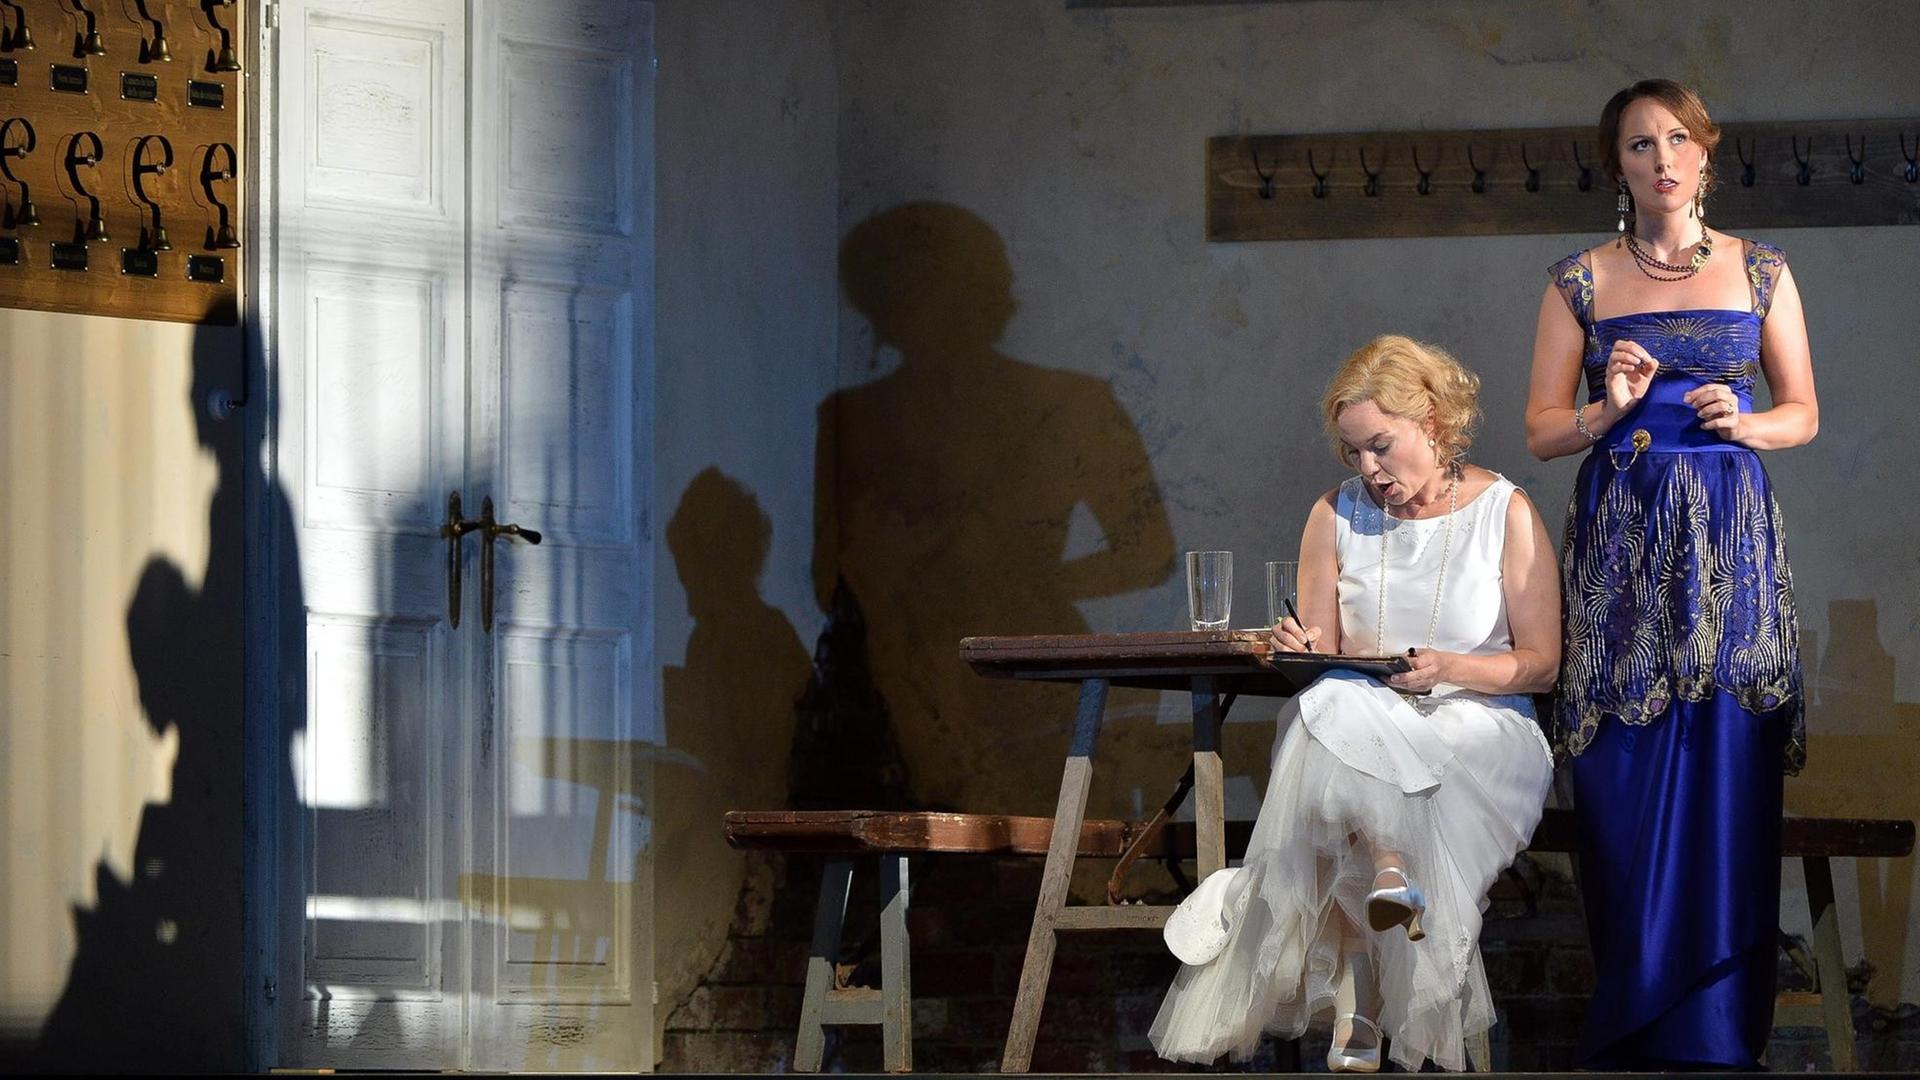 Szene aus "Le Nozze di Figaro" auf der Bühne, eine Frau sitzend, eine Frau stehend in Abendkleidern.